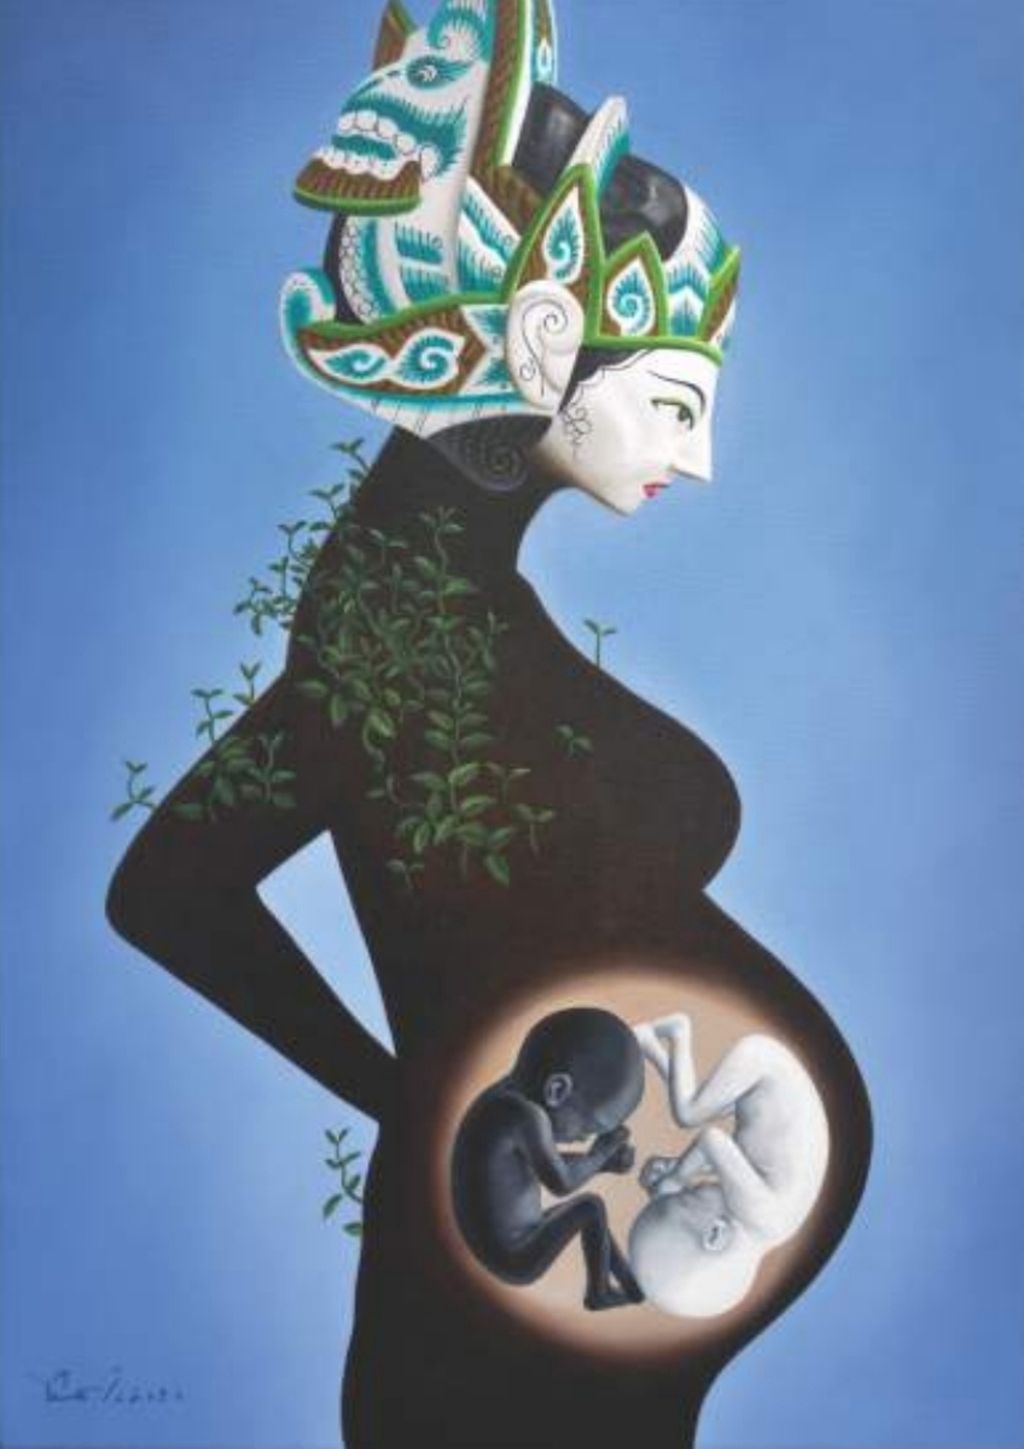 Lukisan karya Susilo Budi berjudul Kembar Yin Yang ini merupakan salah satu lukisan ilustrasi cerita bersambung Anak Bajang Mengayun Bulan karya Sindhunata